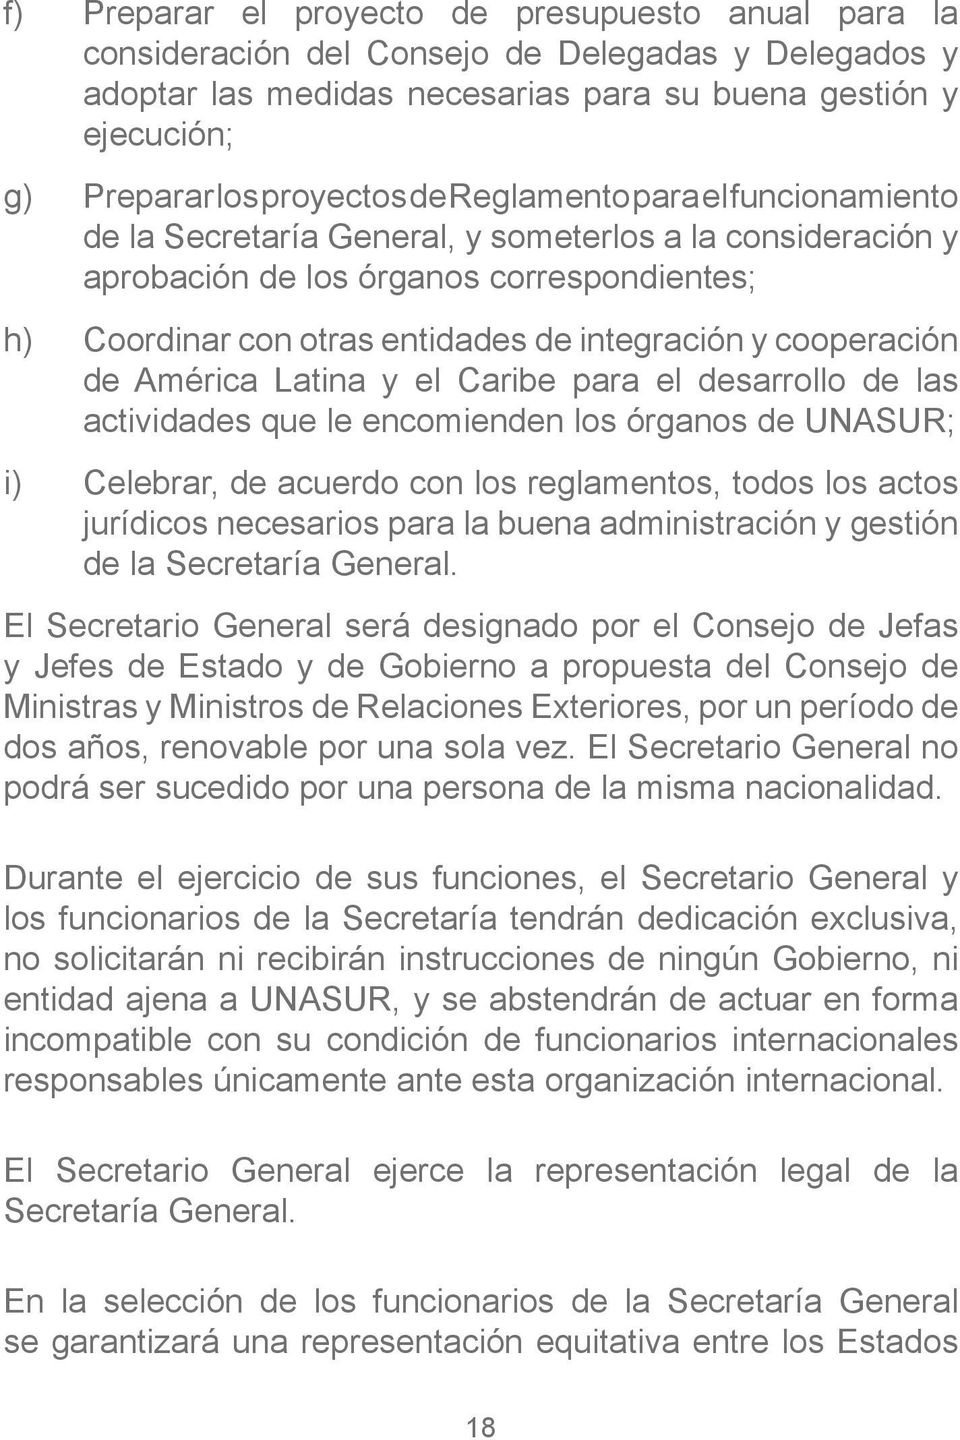 cooperación de América Latina y el Caribe para el desarrollo de las actividades que le encomienden los órganos de UNASUR; i) Celebrar, de acuerdo con los reglamentos, todos los actos jurídicos